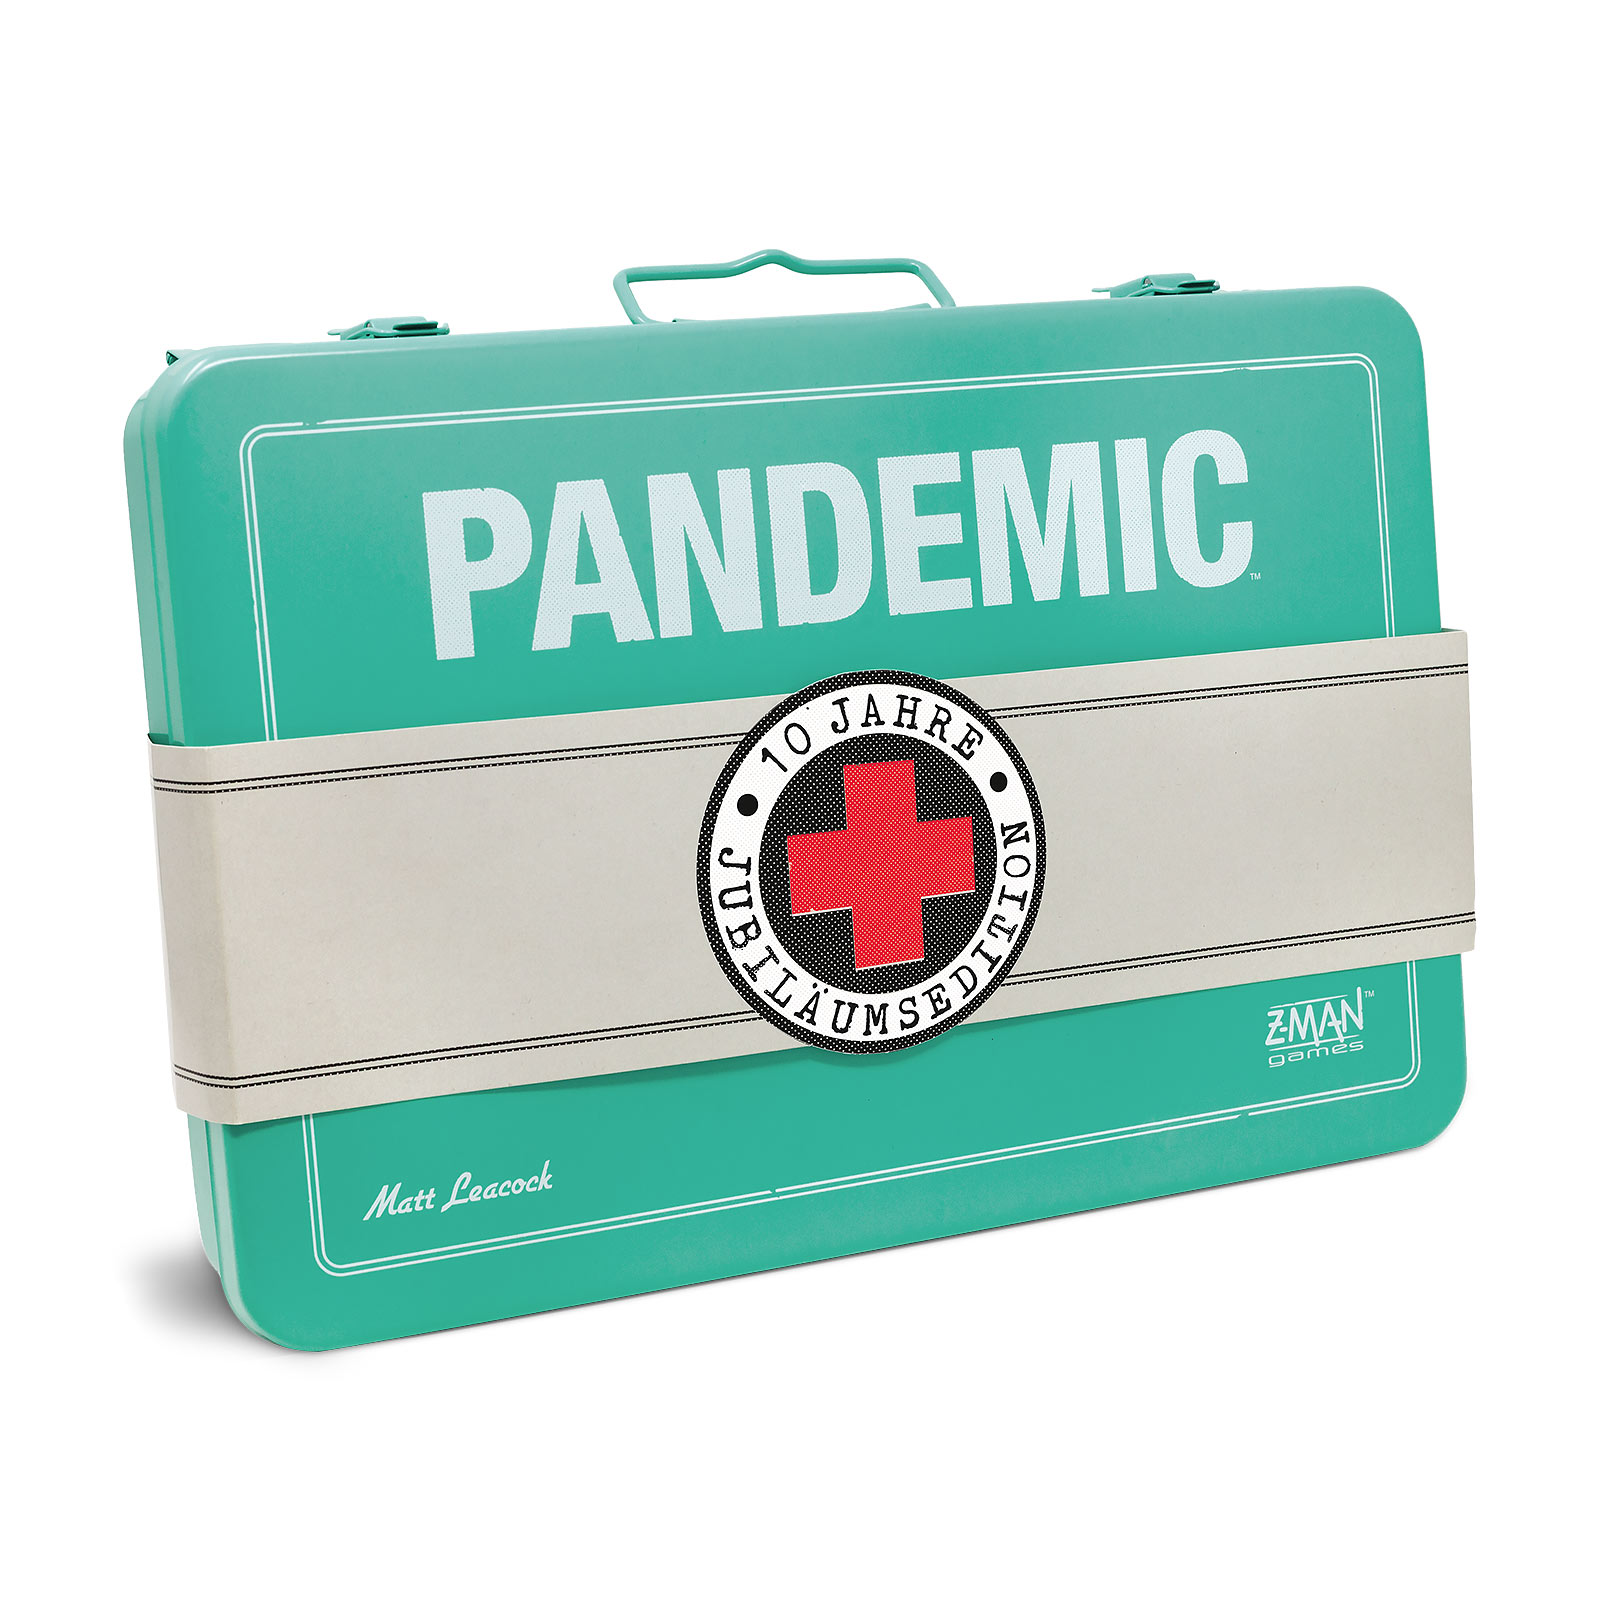 Jeu Pandemic - Édition Anniversaire 10 ans